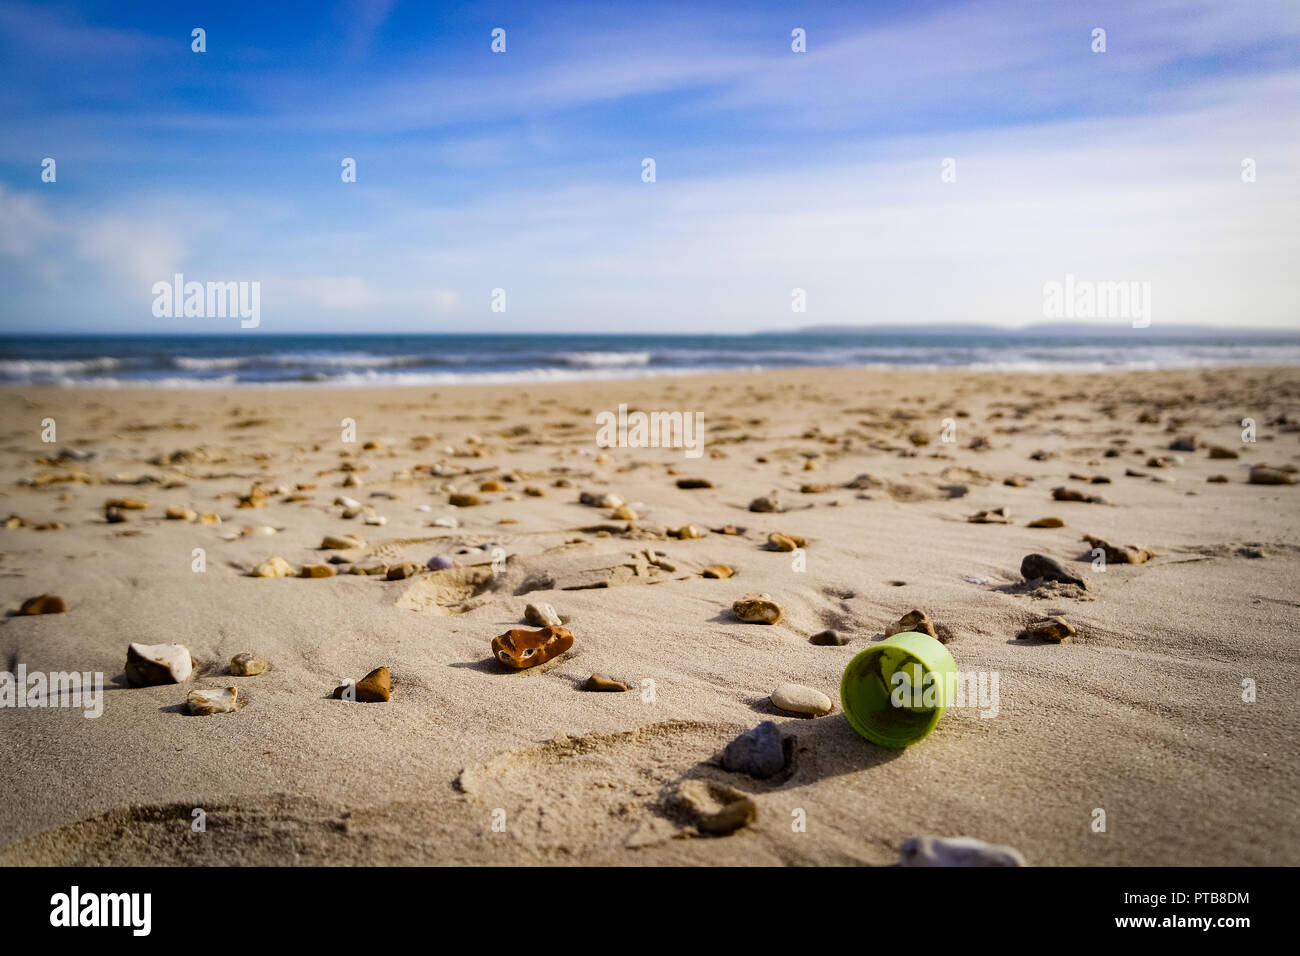 La basura de plástico se lavan en una playa, REINO UNIDO Foto de stock